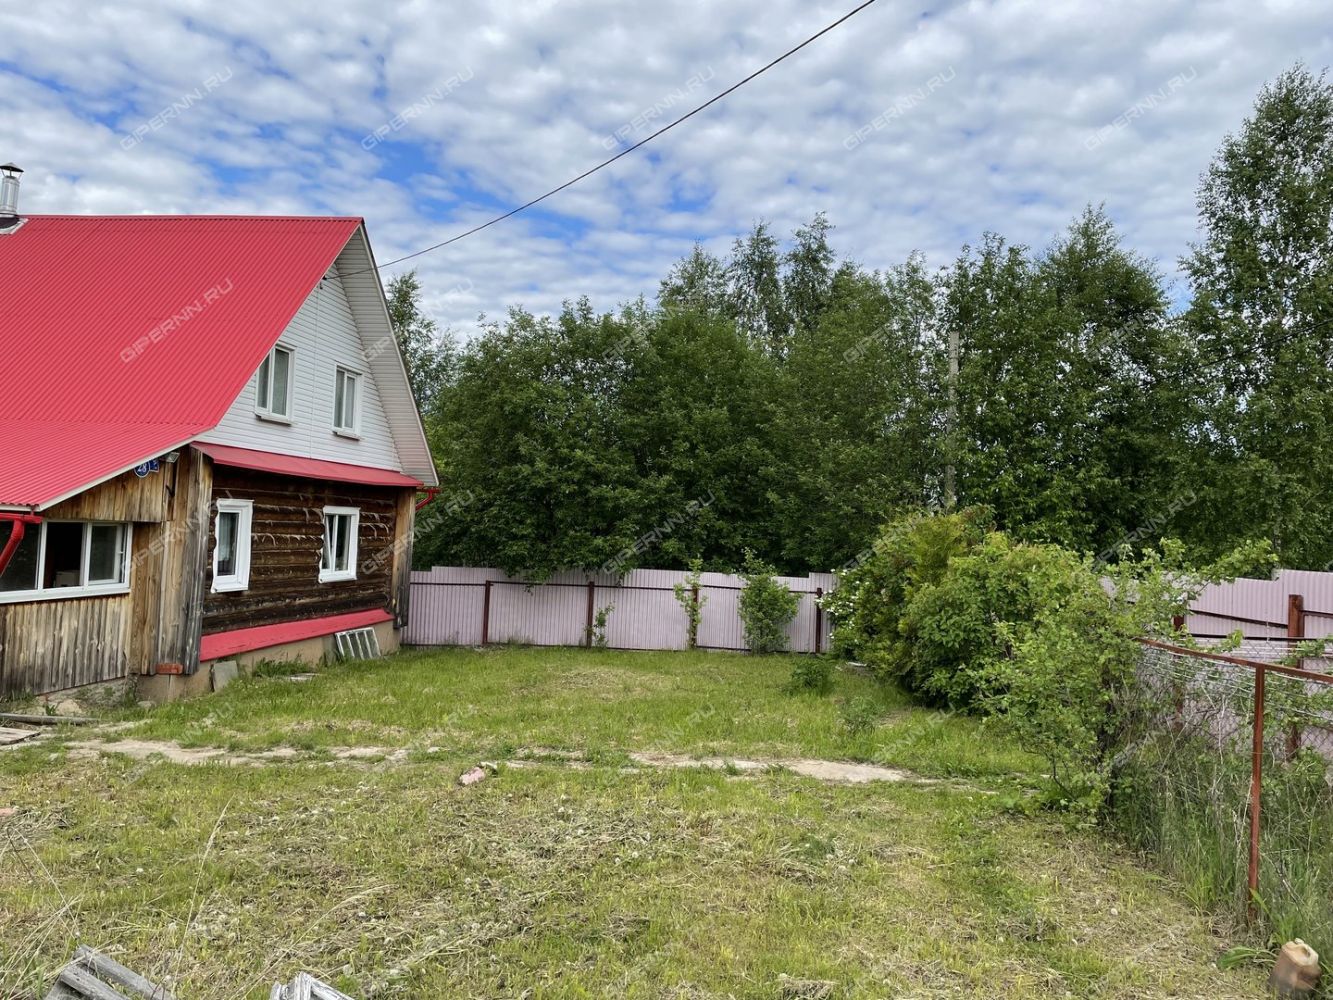 Продажа домов в нижегородской области недорого с фото свежие объявления